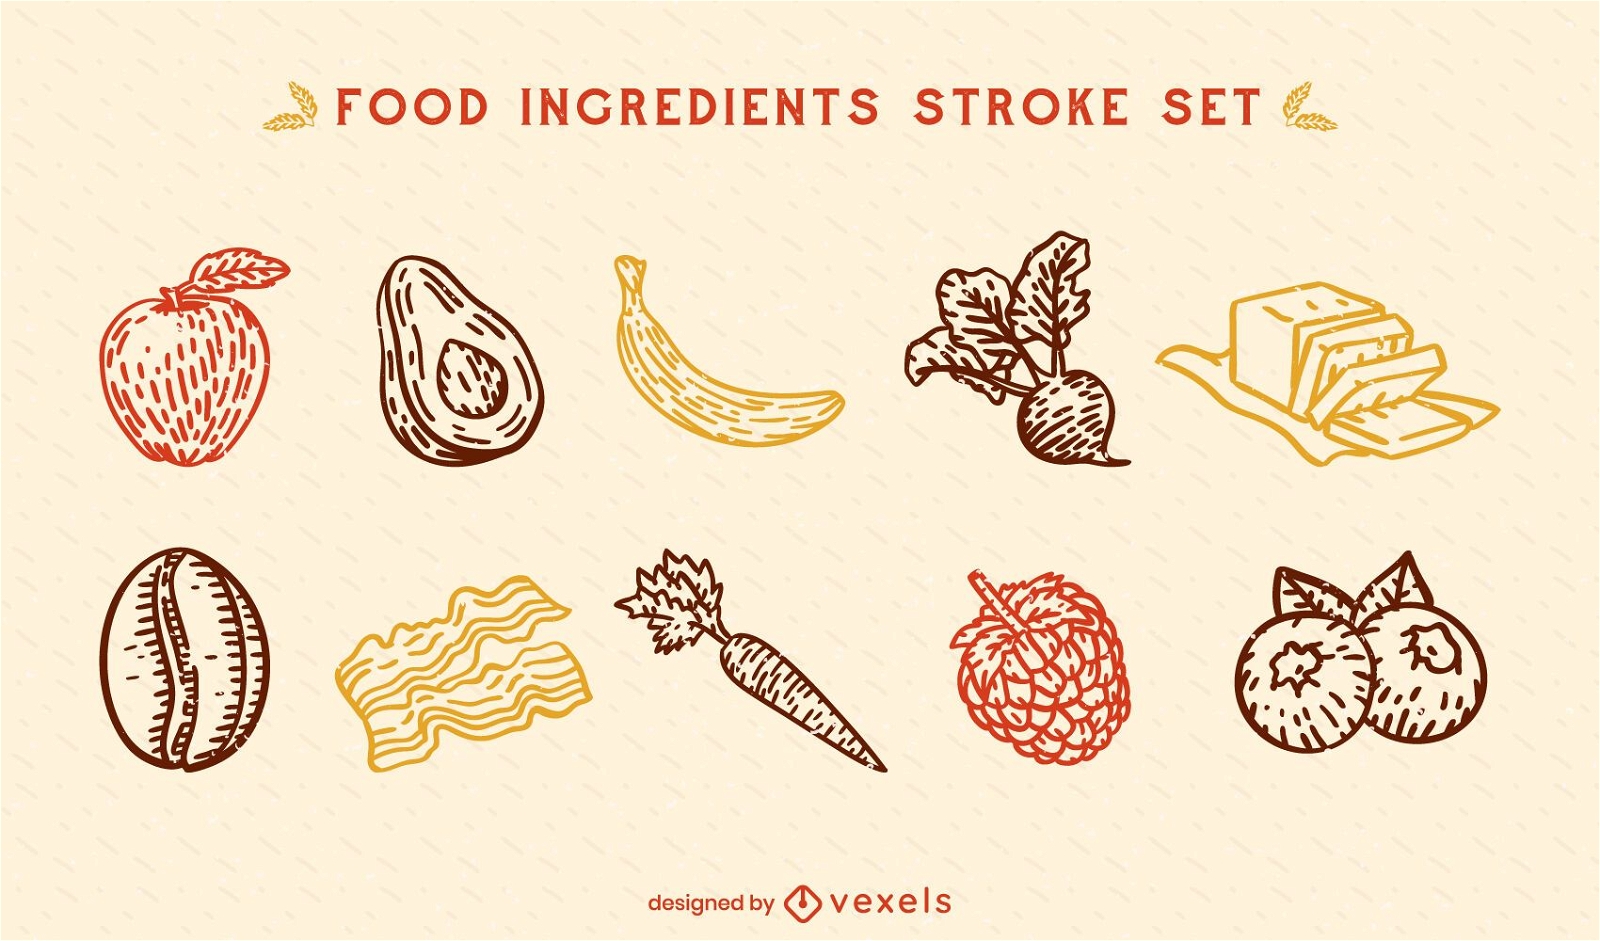 Healthy food ingredients stroke set